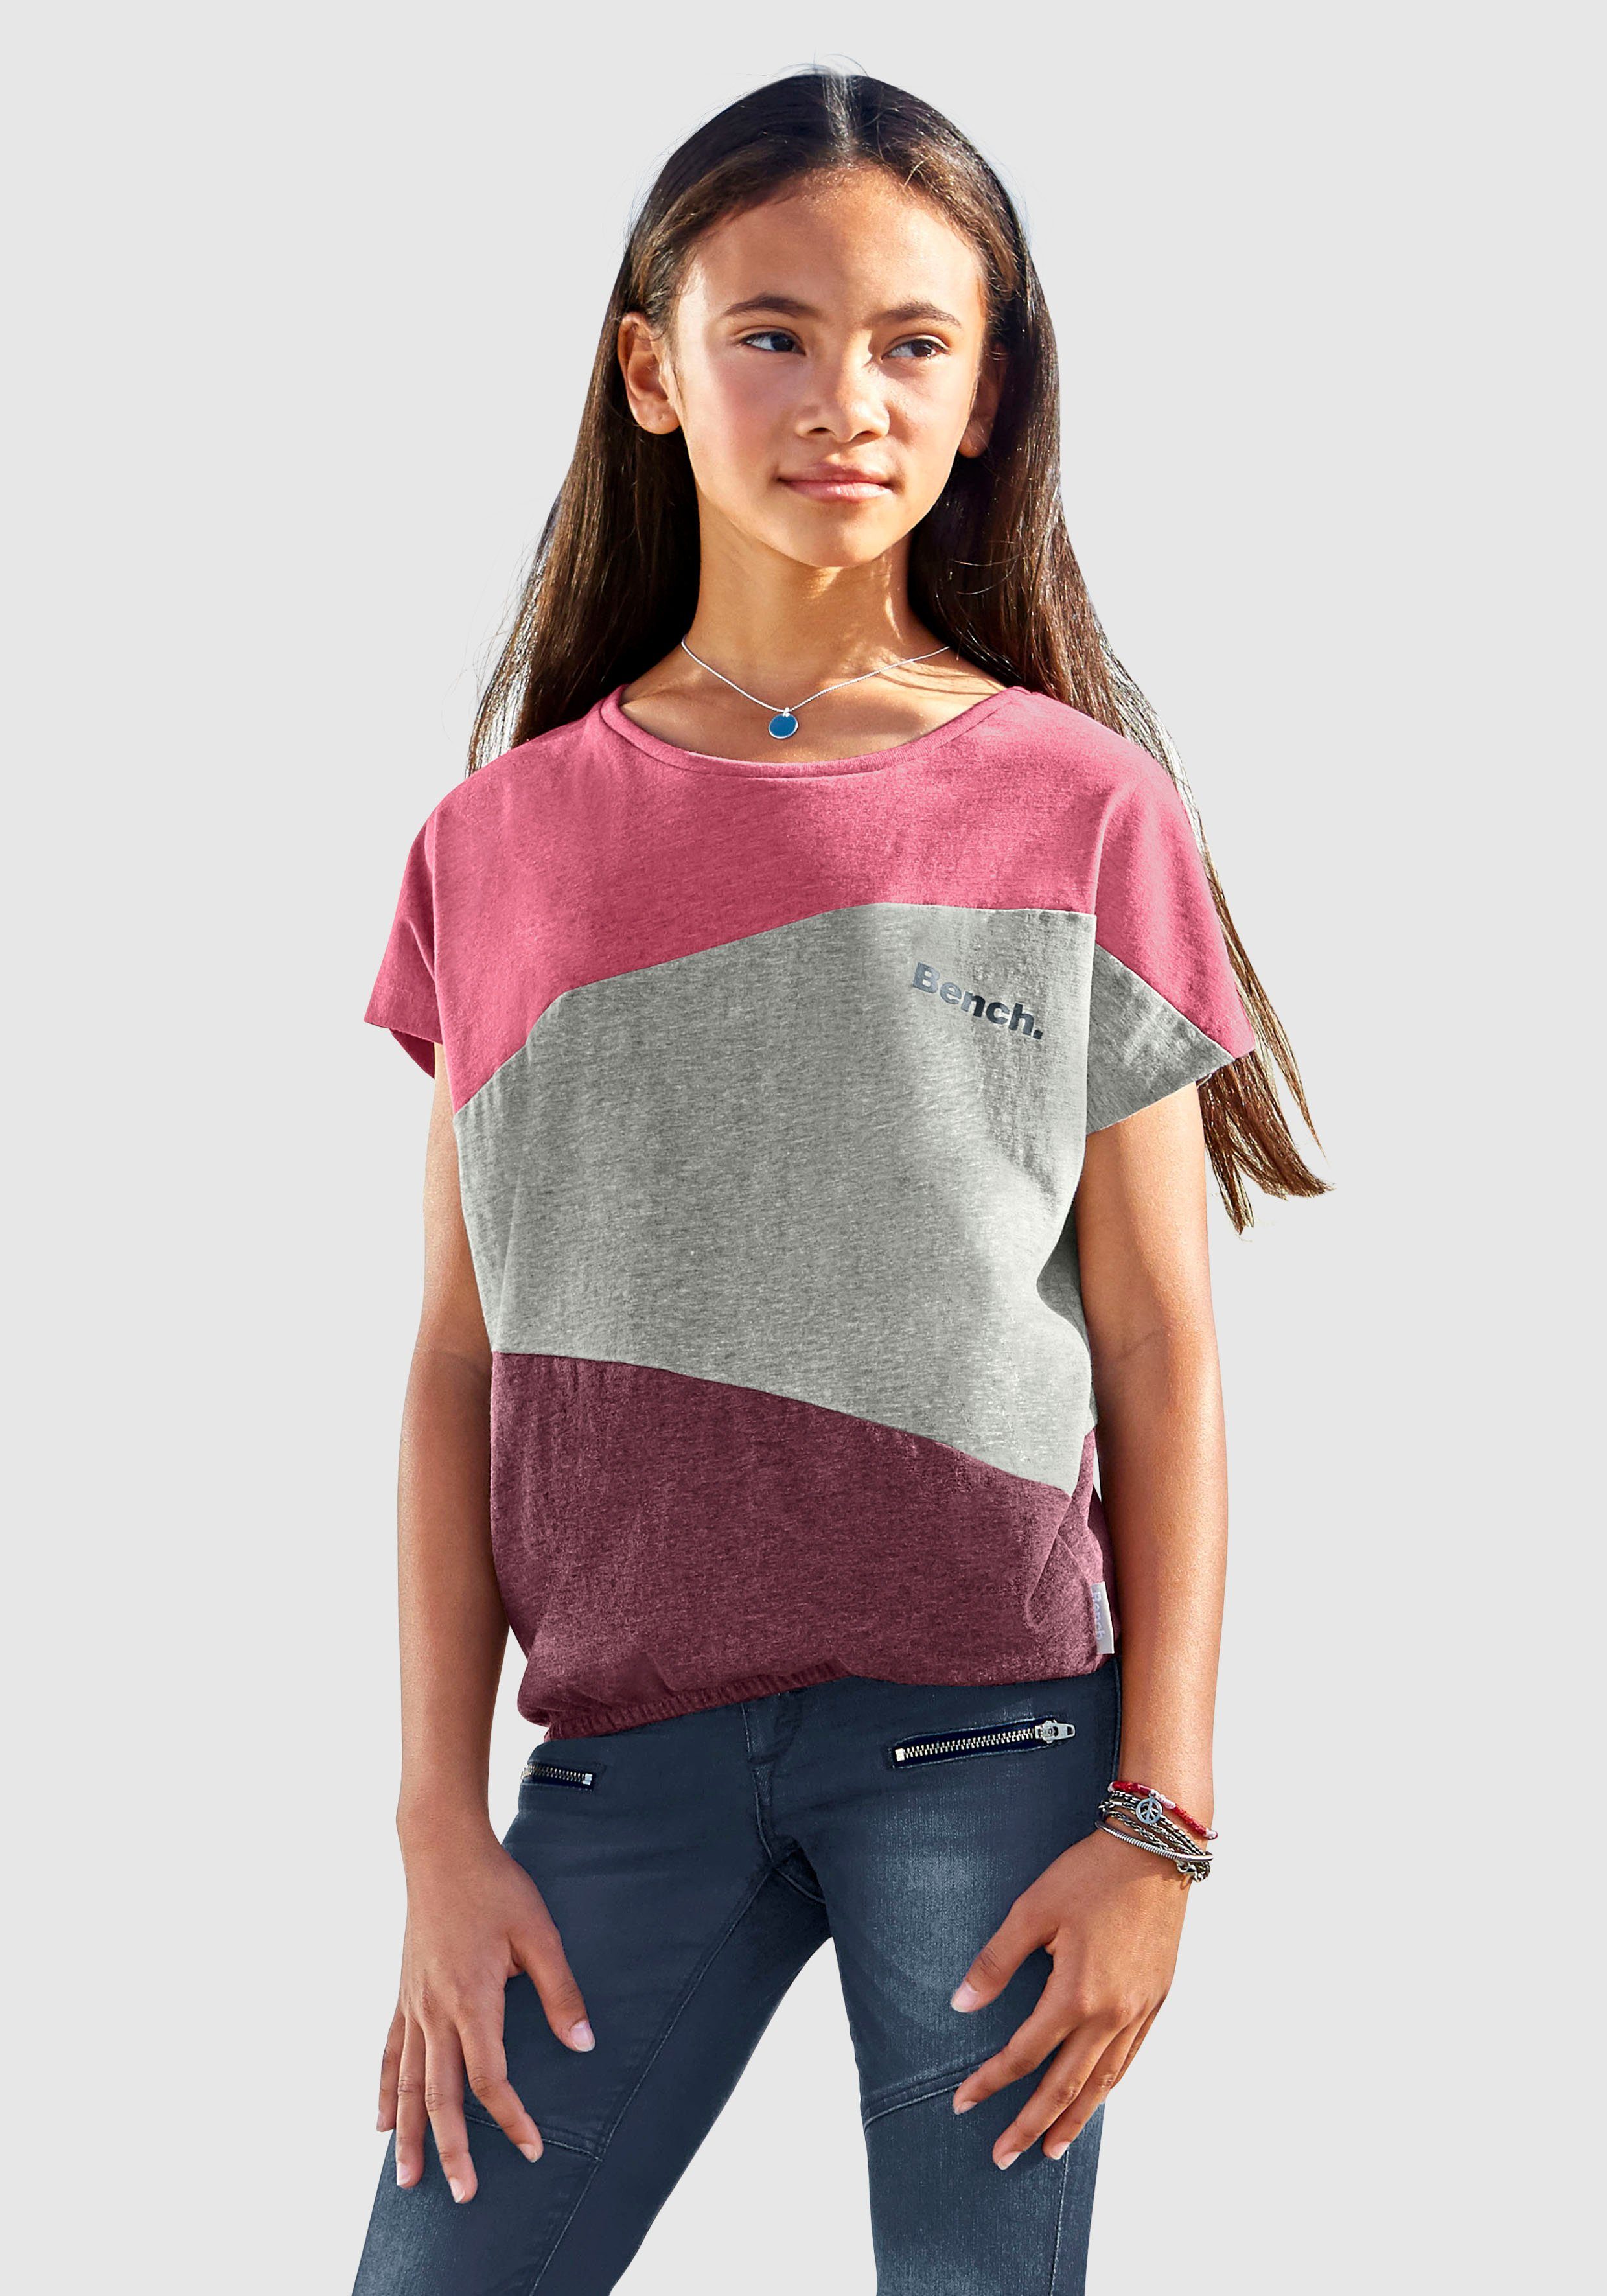 Bench Mädchen T-Shirts online kaufen | OTTO